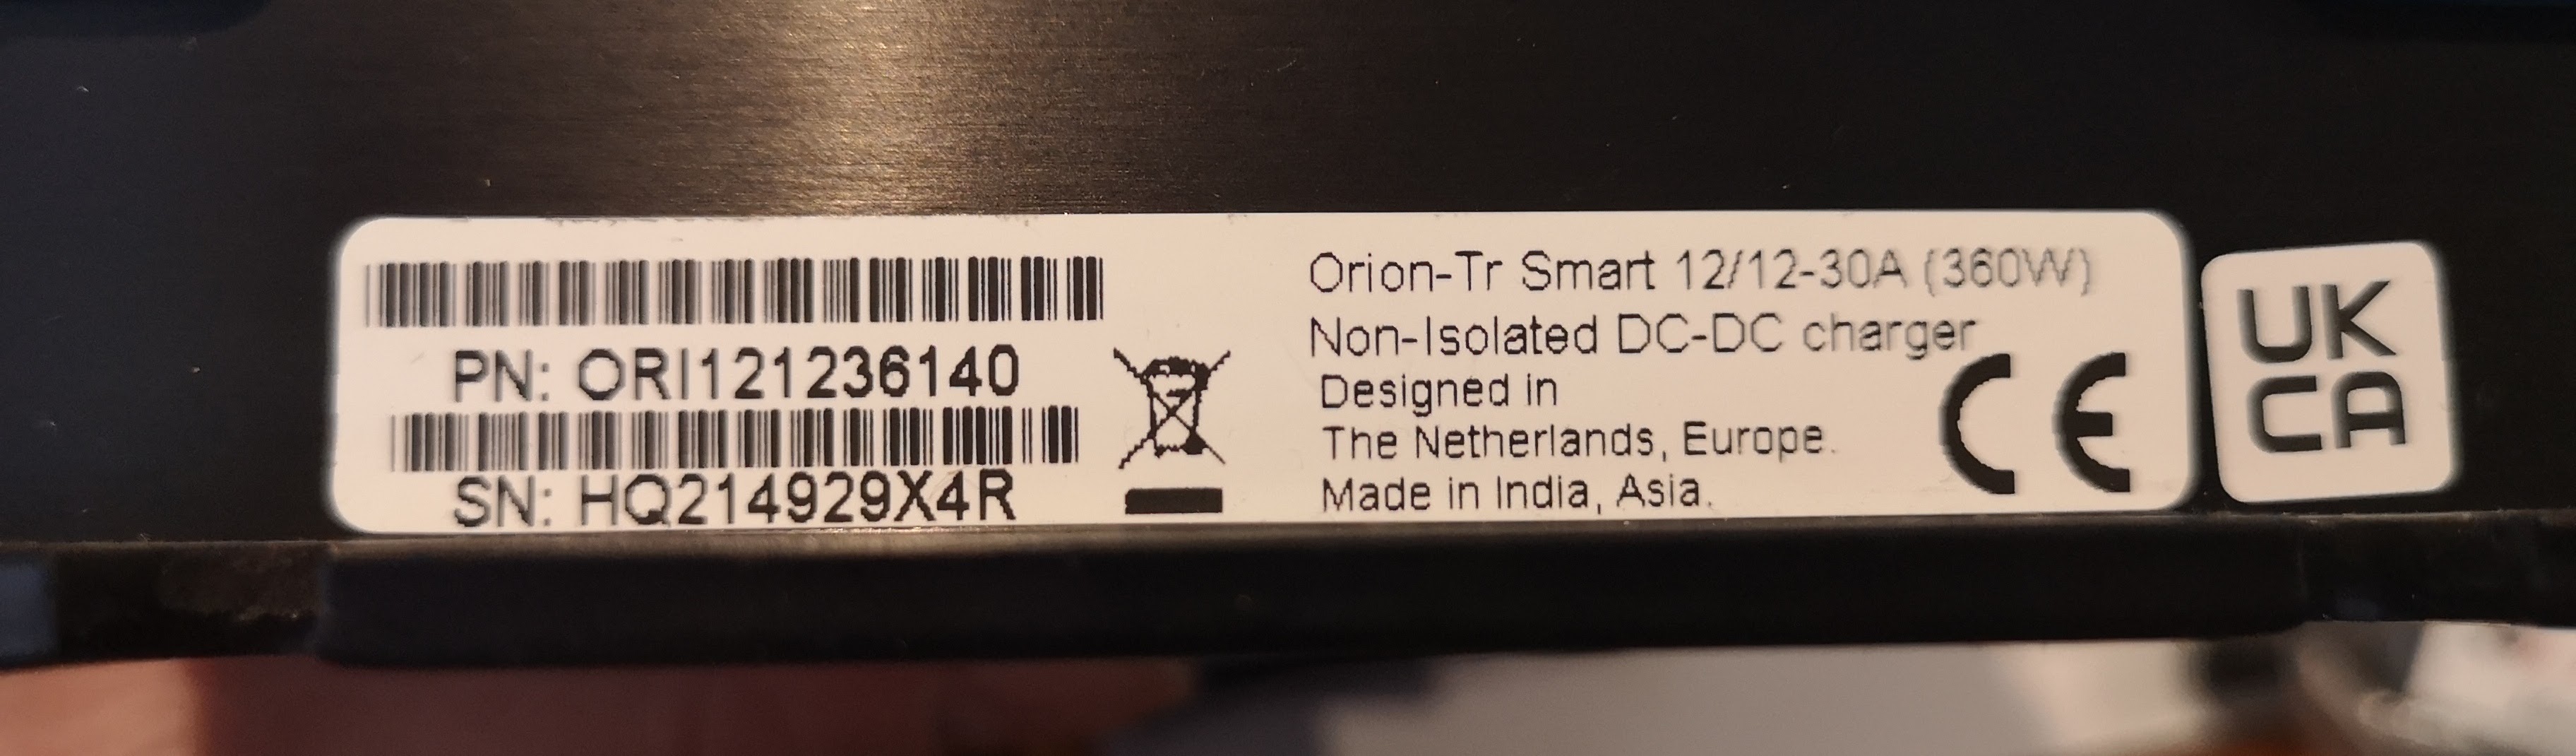 Victron Energy Orion-Tr Smart 12/12-Volt 30 Amp 360-Watt DC-DC